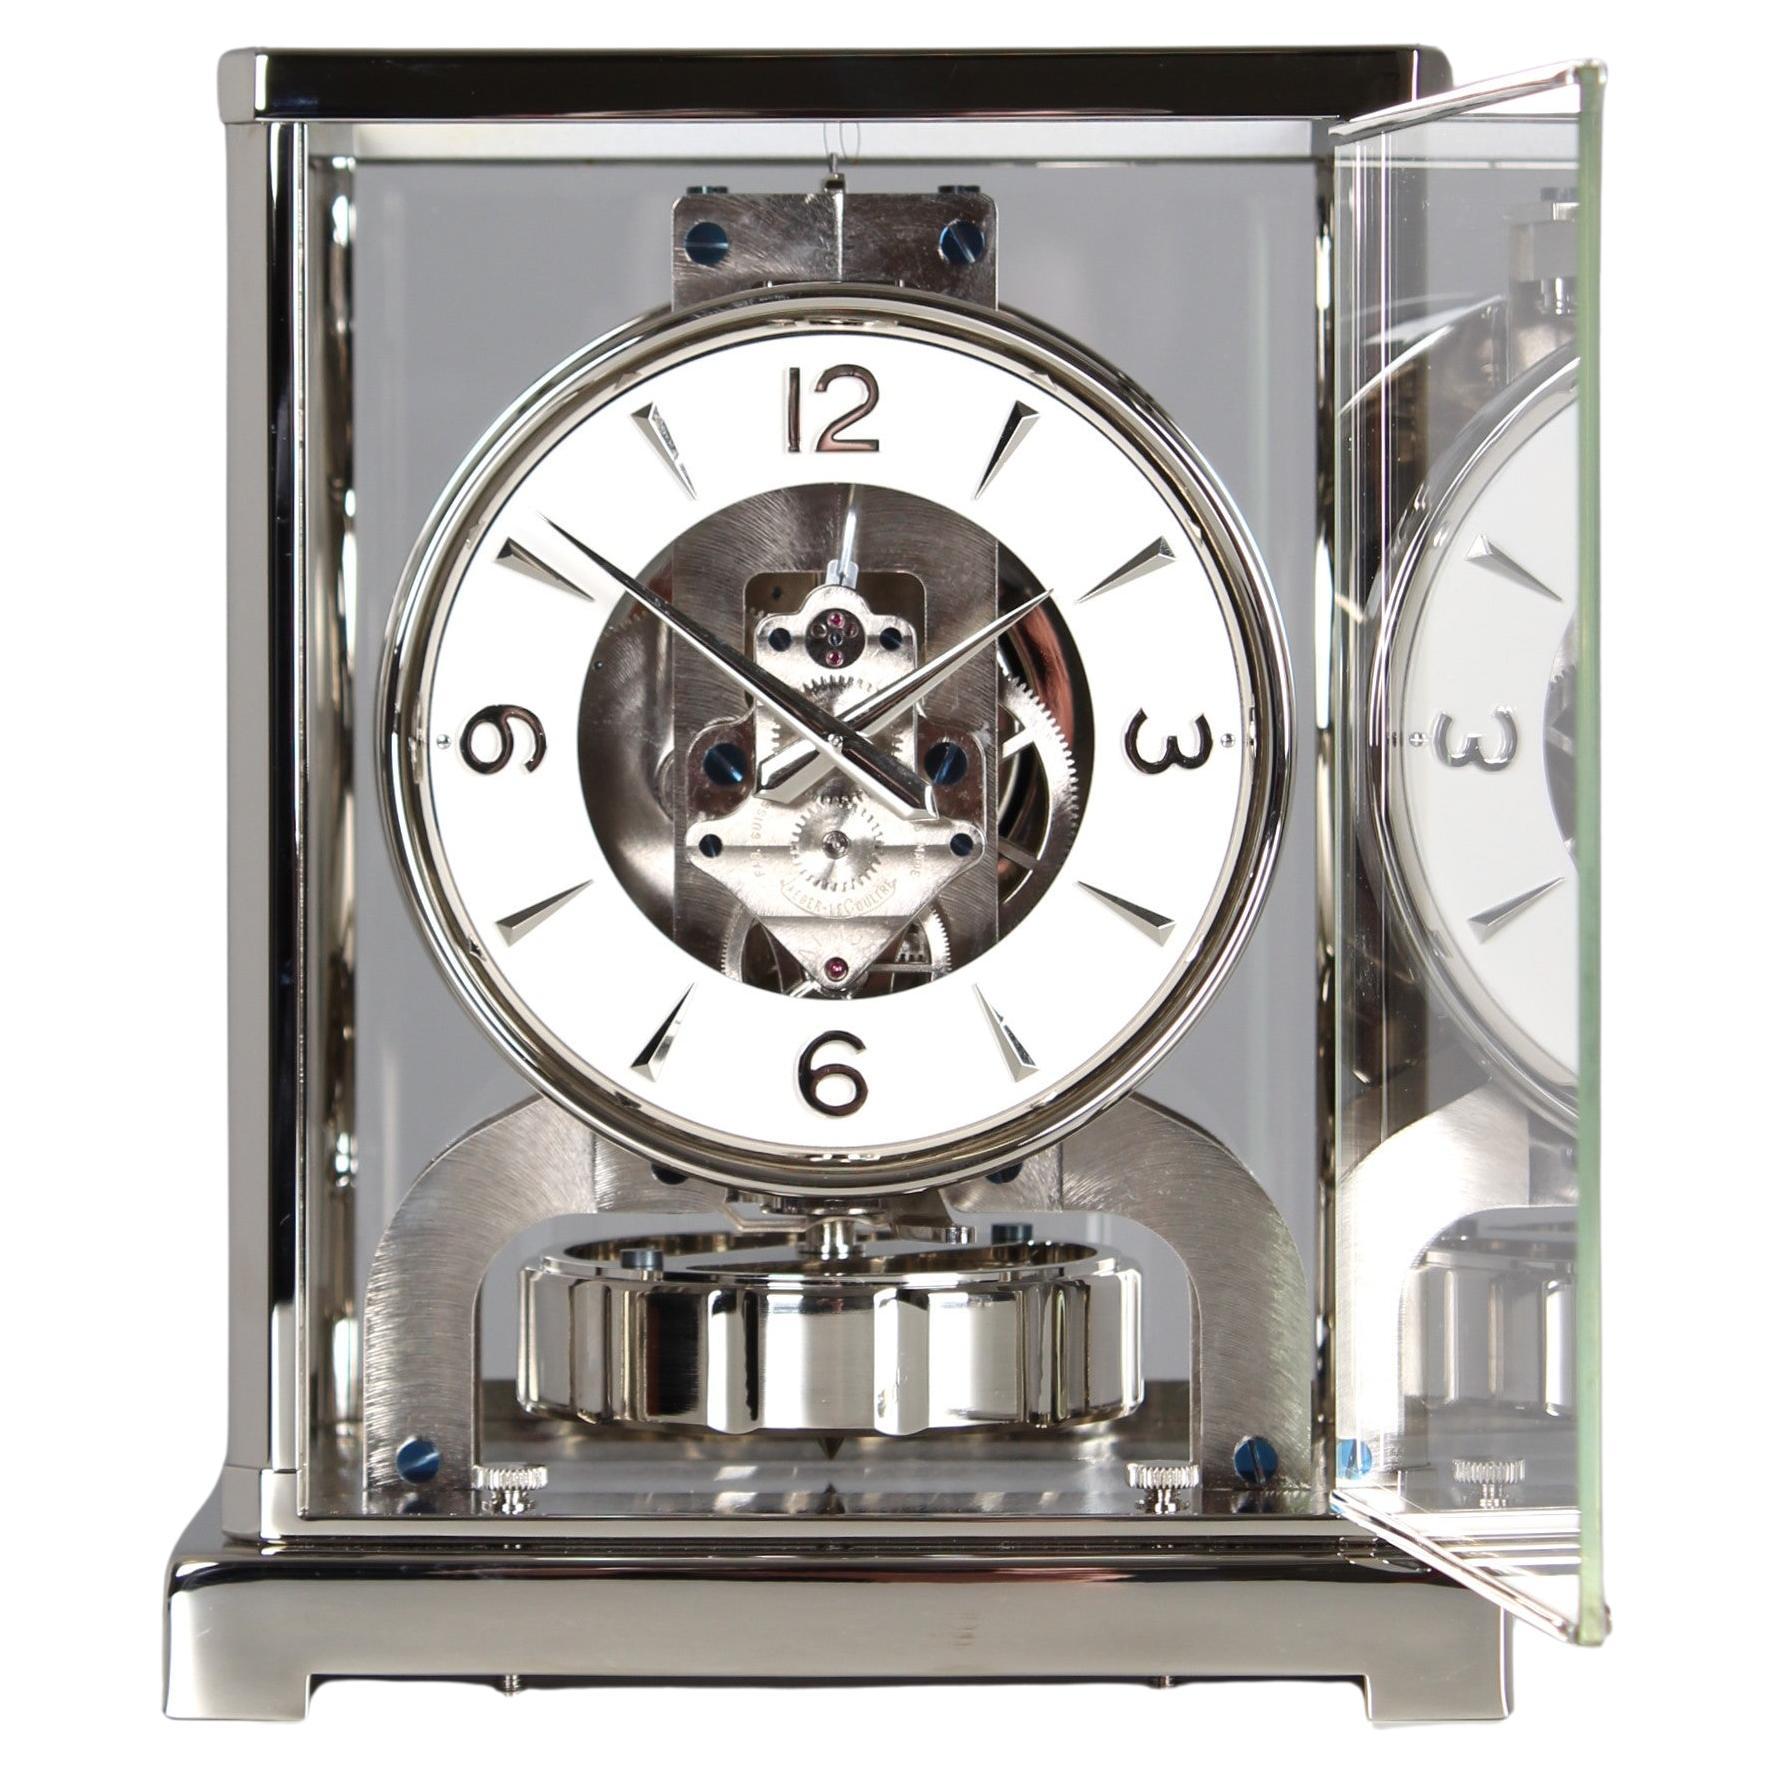 Jaeger LeCoultre, horloge Atmos en argent de 1955, revisitée et neuve plaquée nickel